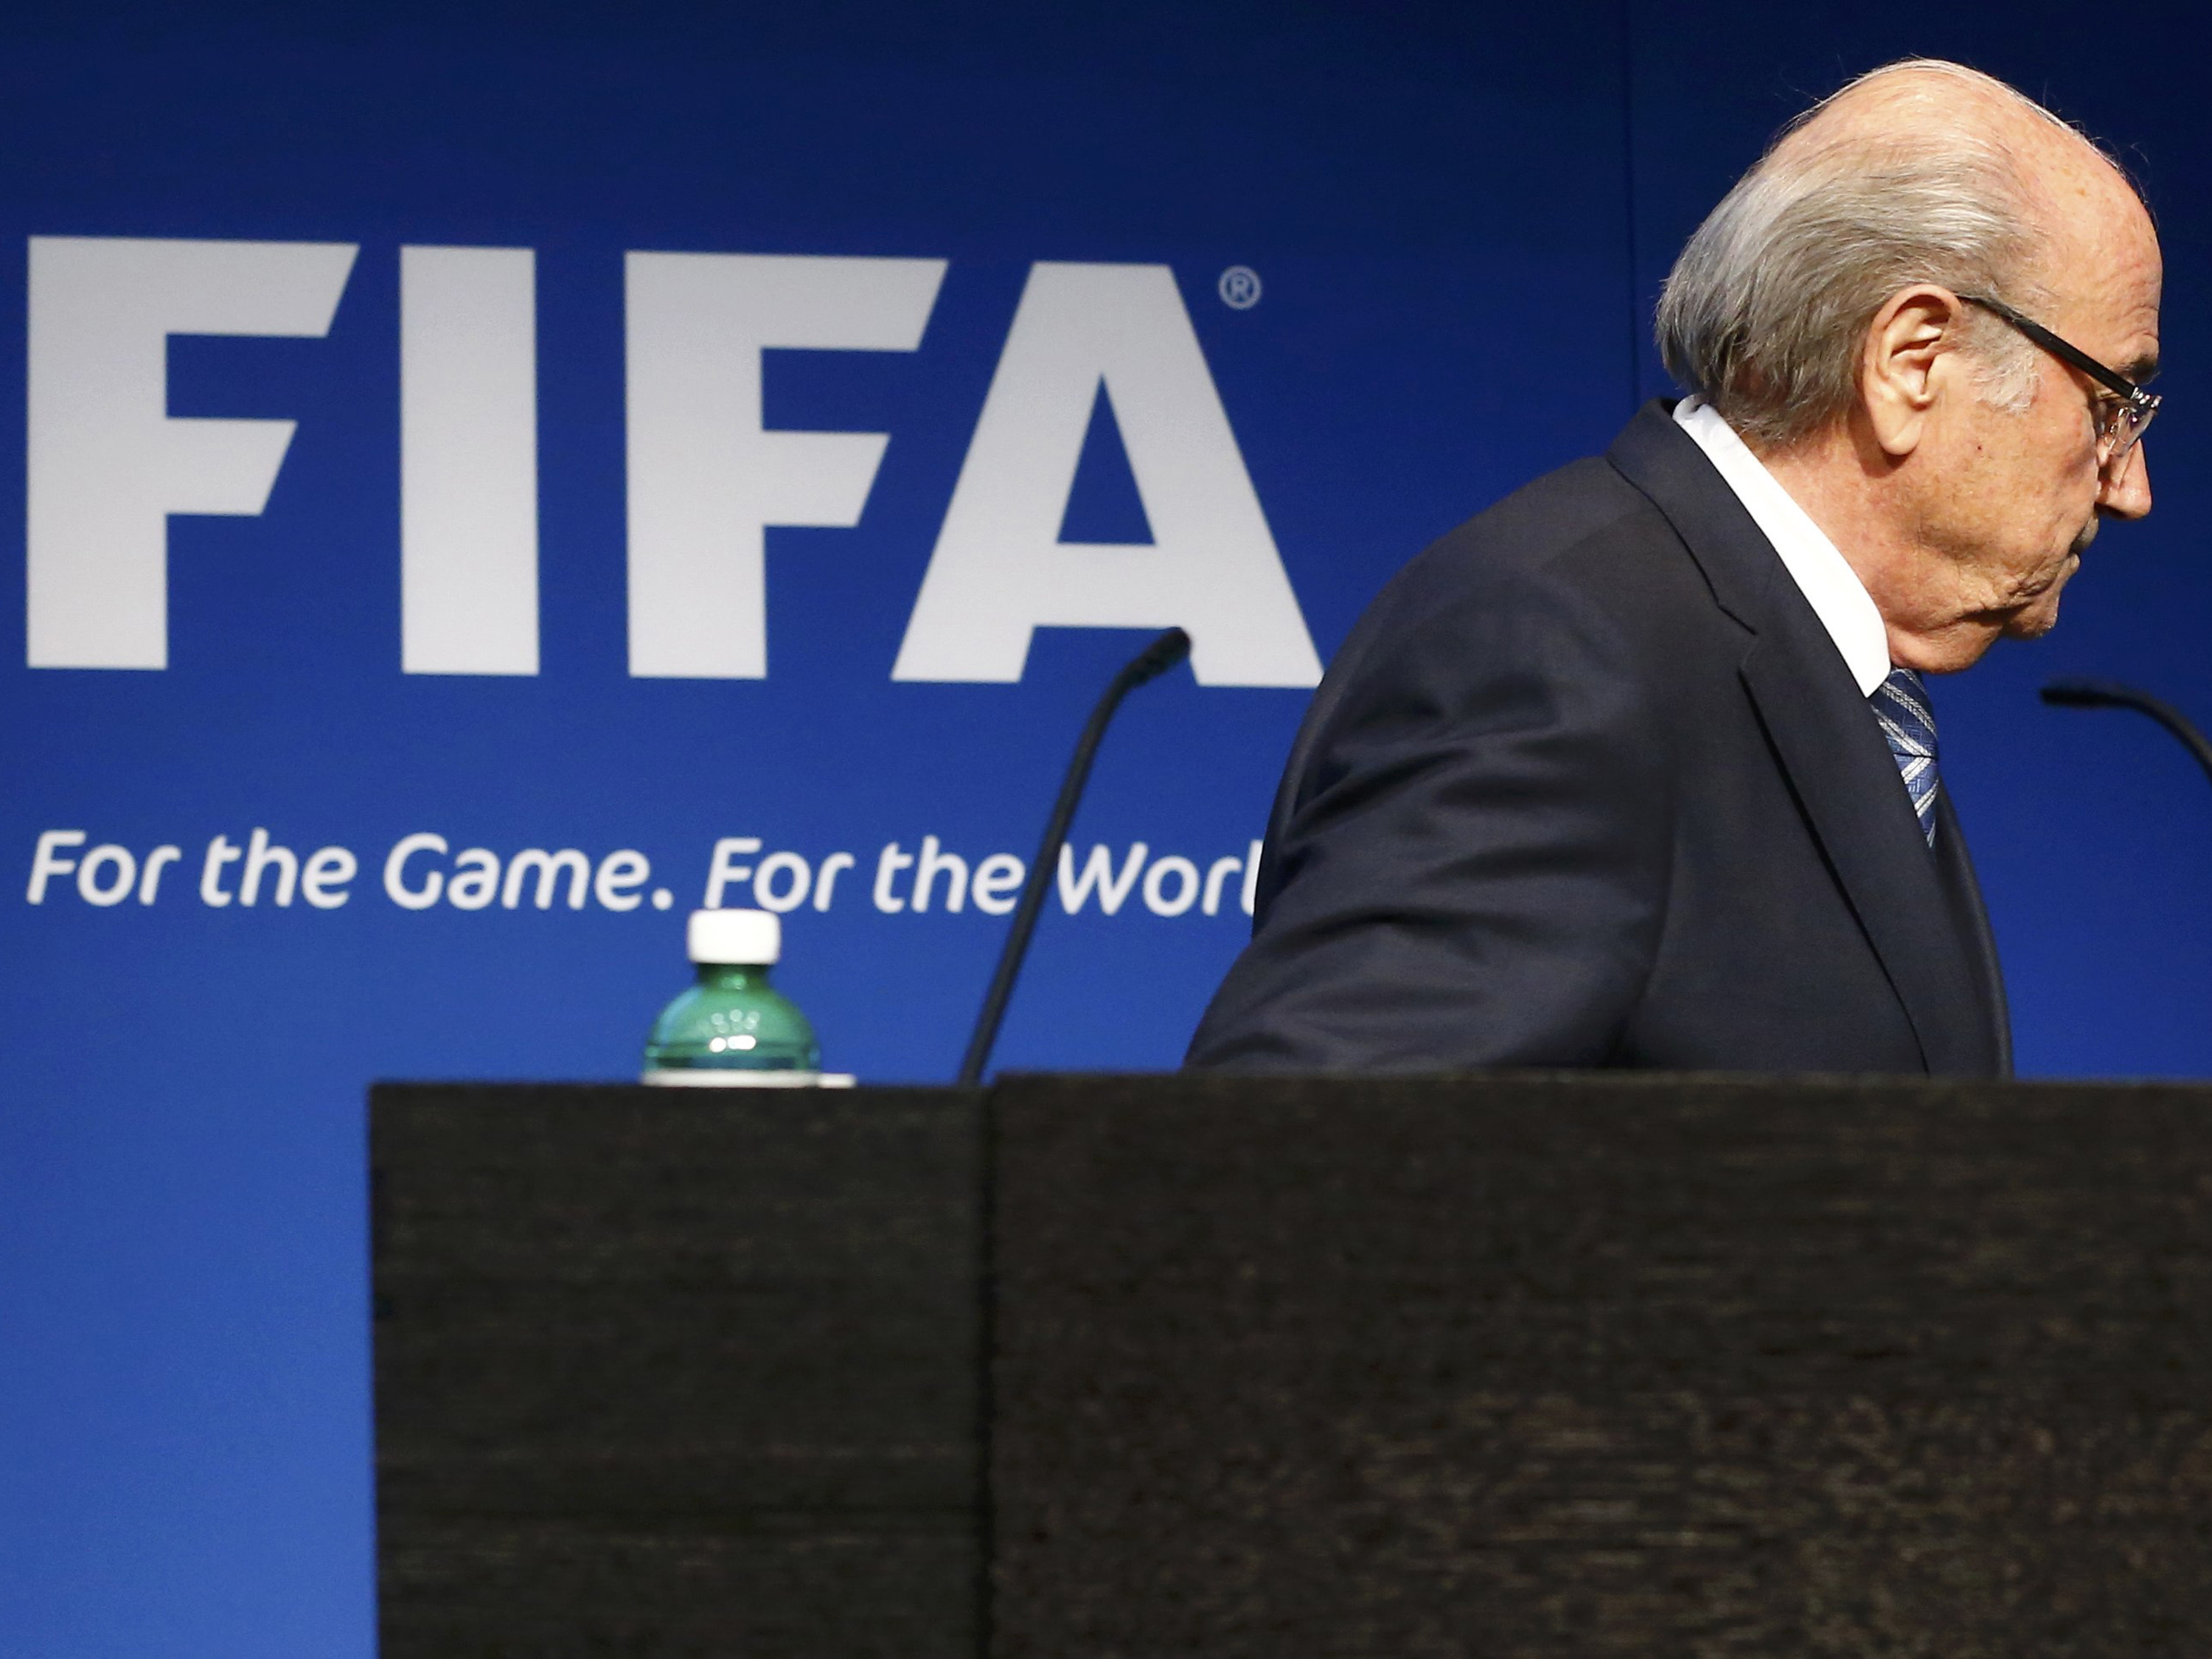 ‘A Fifa me abandonou’, diz Joseph Blatter, afastado da presidência da entidade por suspeita de corrupção